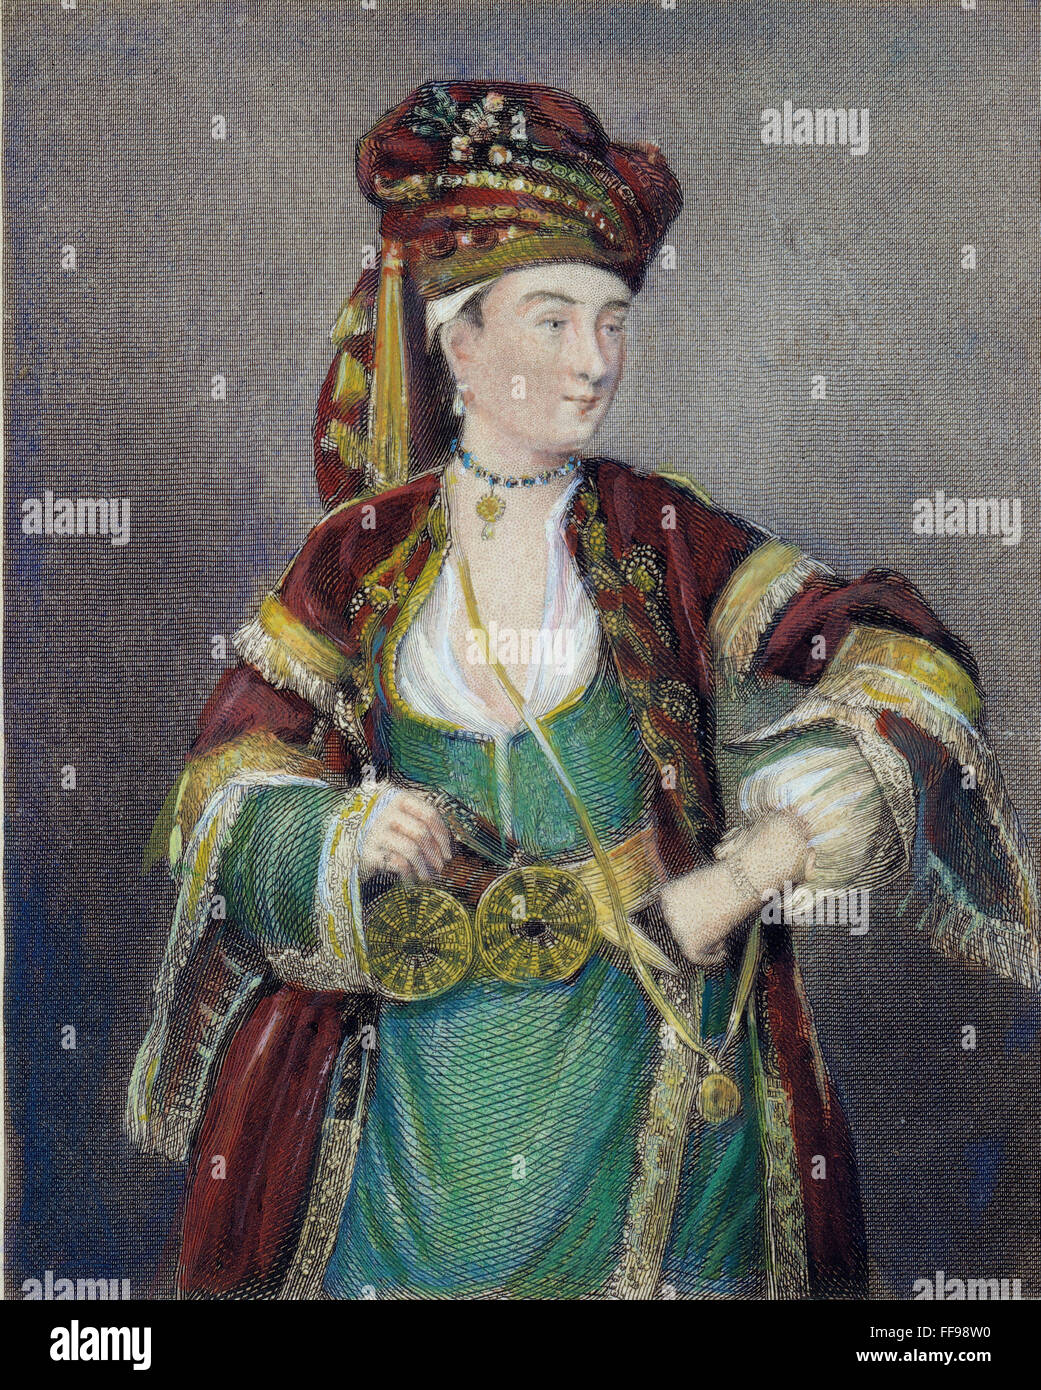 MARY Wortley Montagu /n(1689-1762) en robe turque : gravure sur acier, anglais, 1836. Banque D'Images